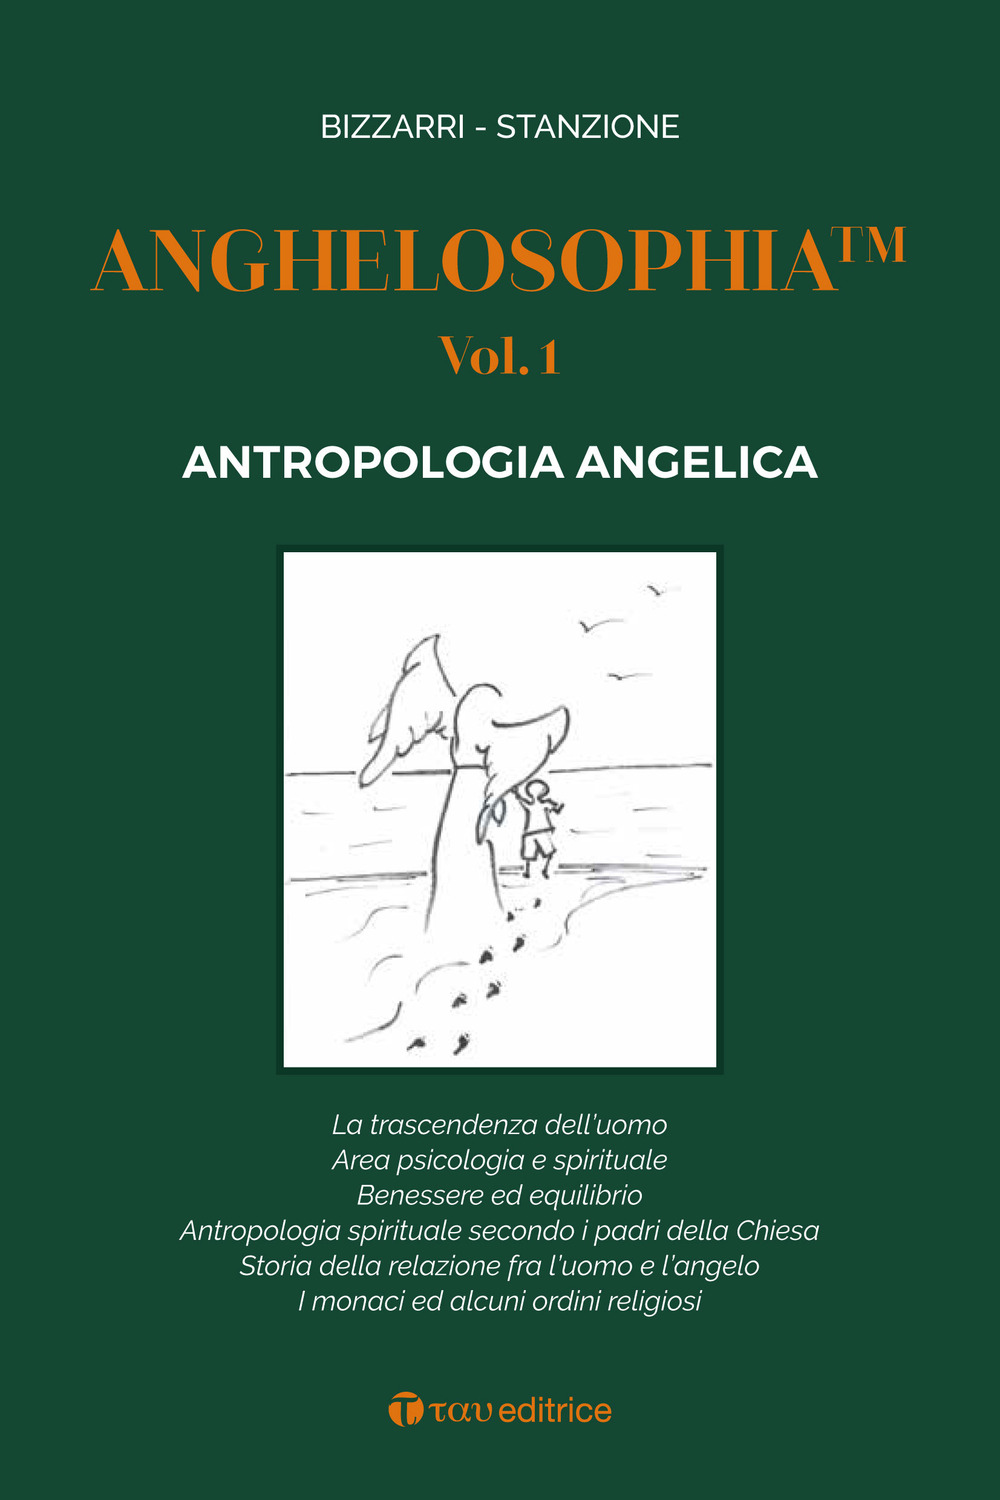 Libri Fausto Bizzarri / Marcello Stanzione - Anghelosophia Vol 01 NUOVO SIGILLATO, EDIZIONE DEL 30/04/2020 SUBITO DISPONIBILE